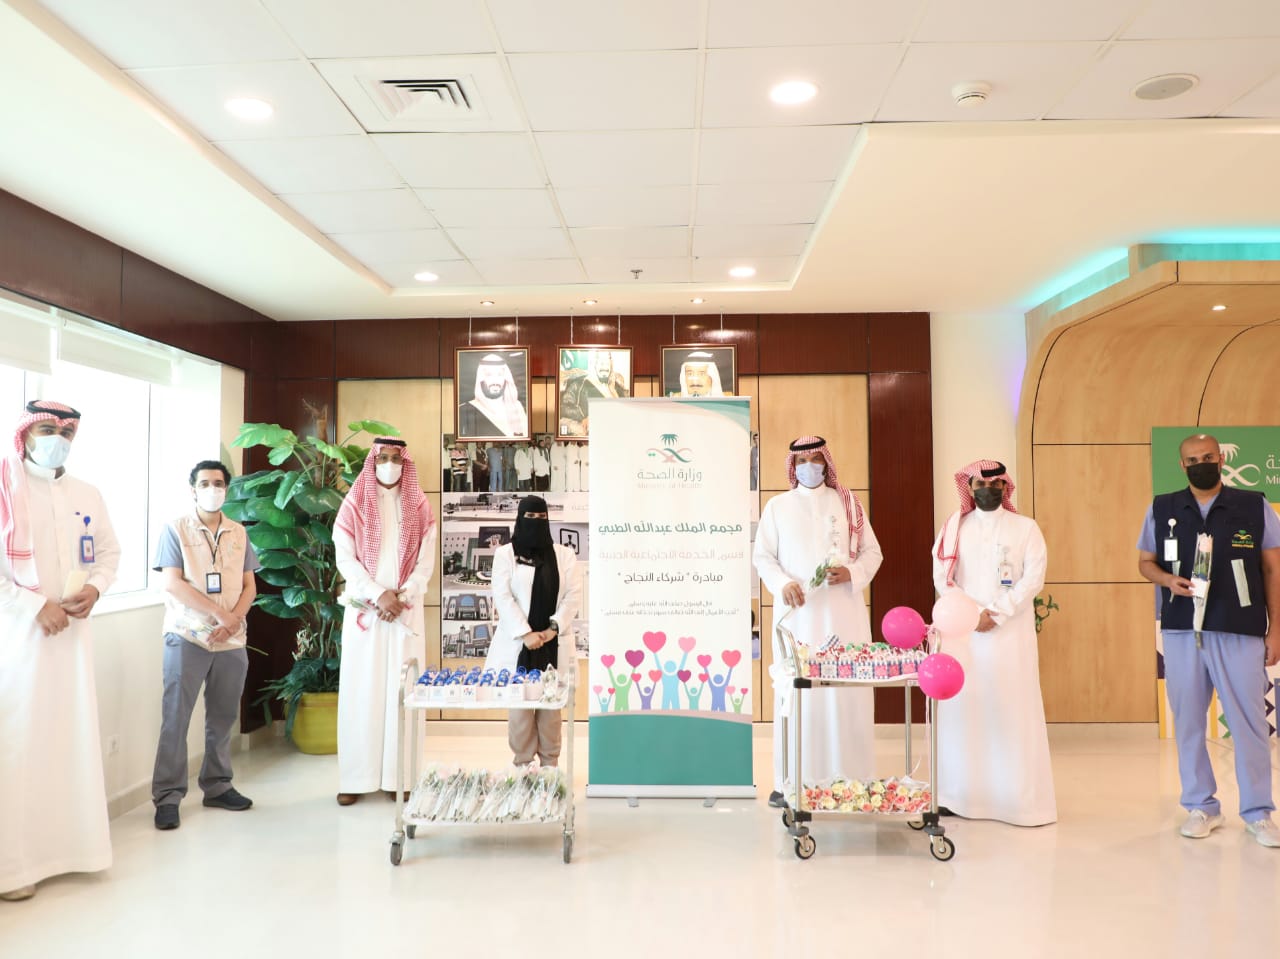 مجمع الملك عبدالله الطبي بجدة يُطلق مبادرة شركاء النجاح